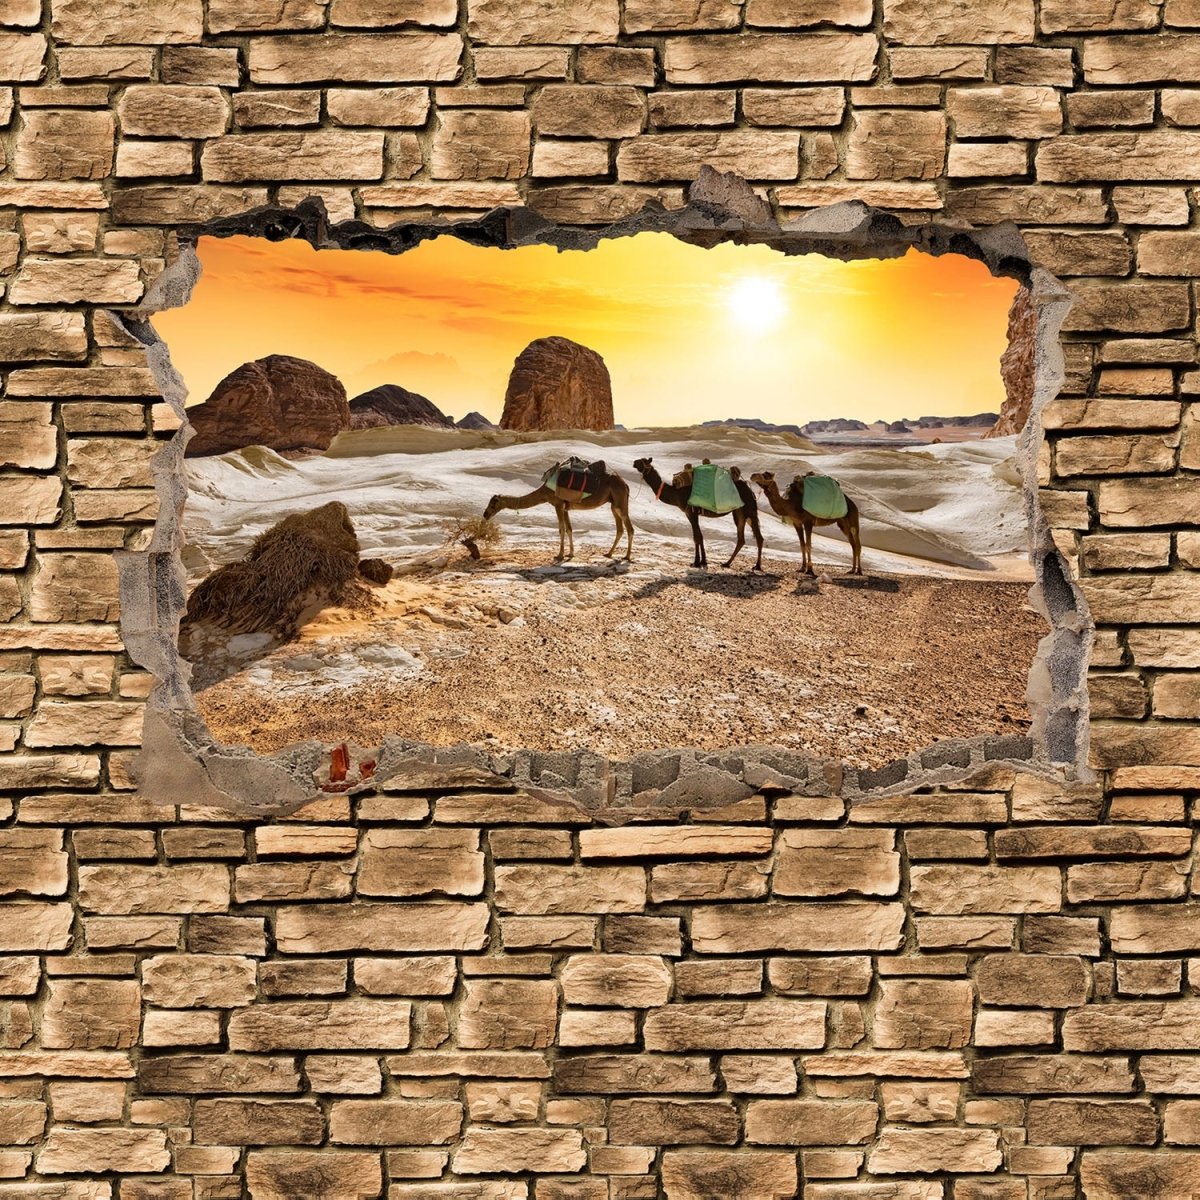 Beistelltisch 3D Kamele in der Wüste - Steinmauer M0673 entdecken - Bild 2